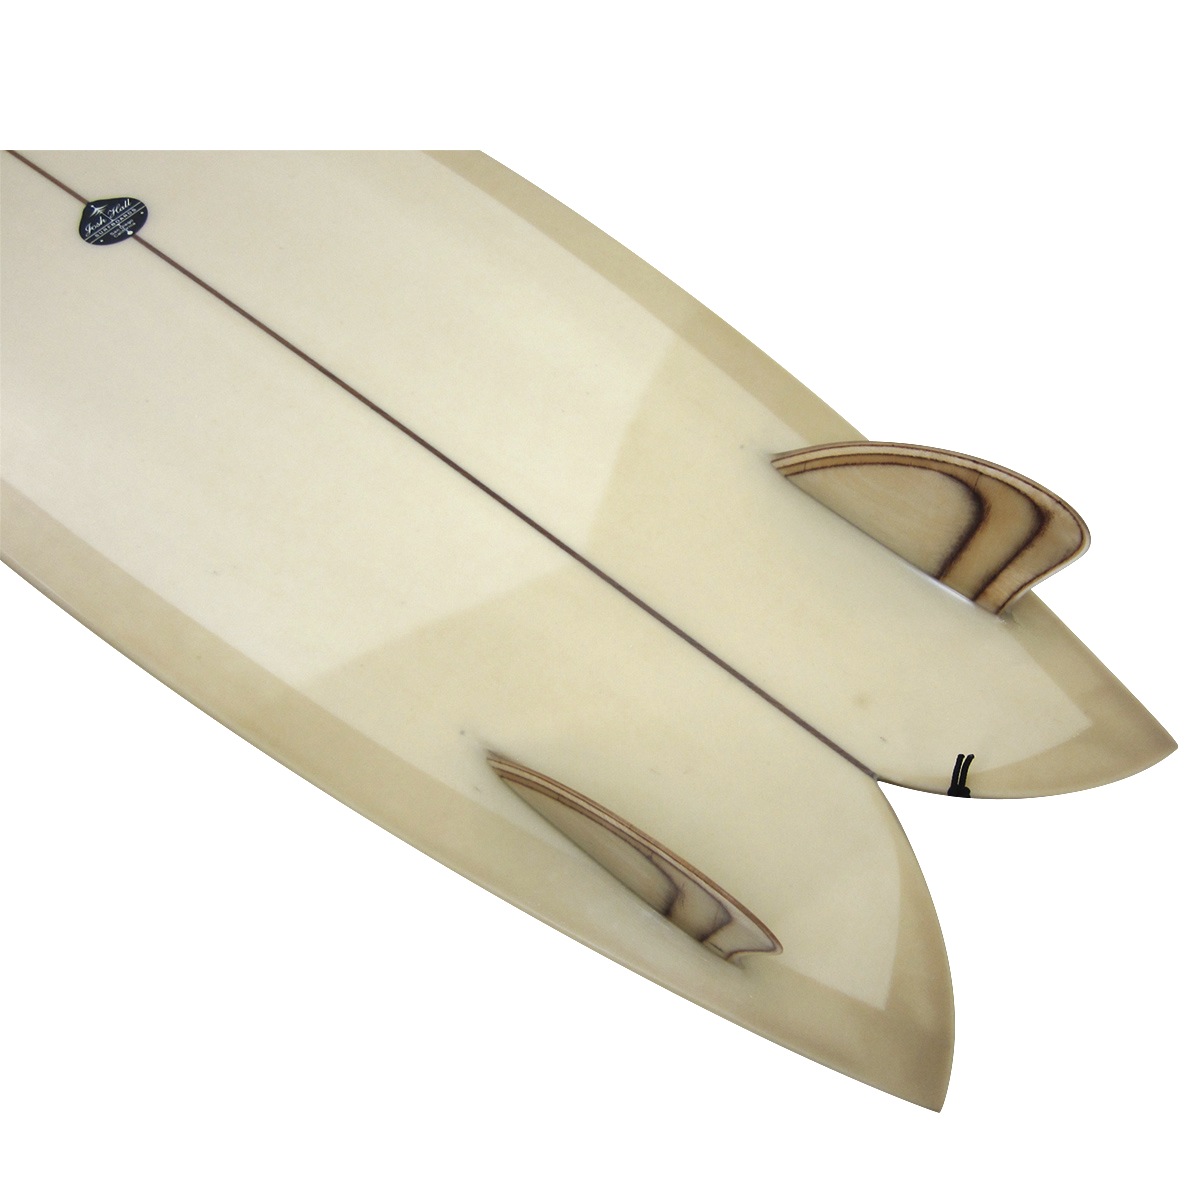 Josh Hall Surfboards / 5`10 Sandiego Twin Keel Fish  